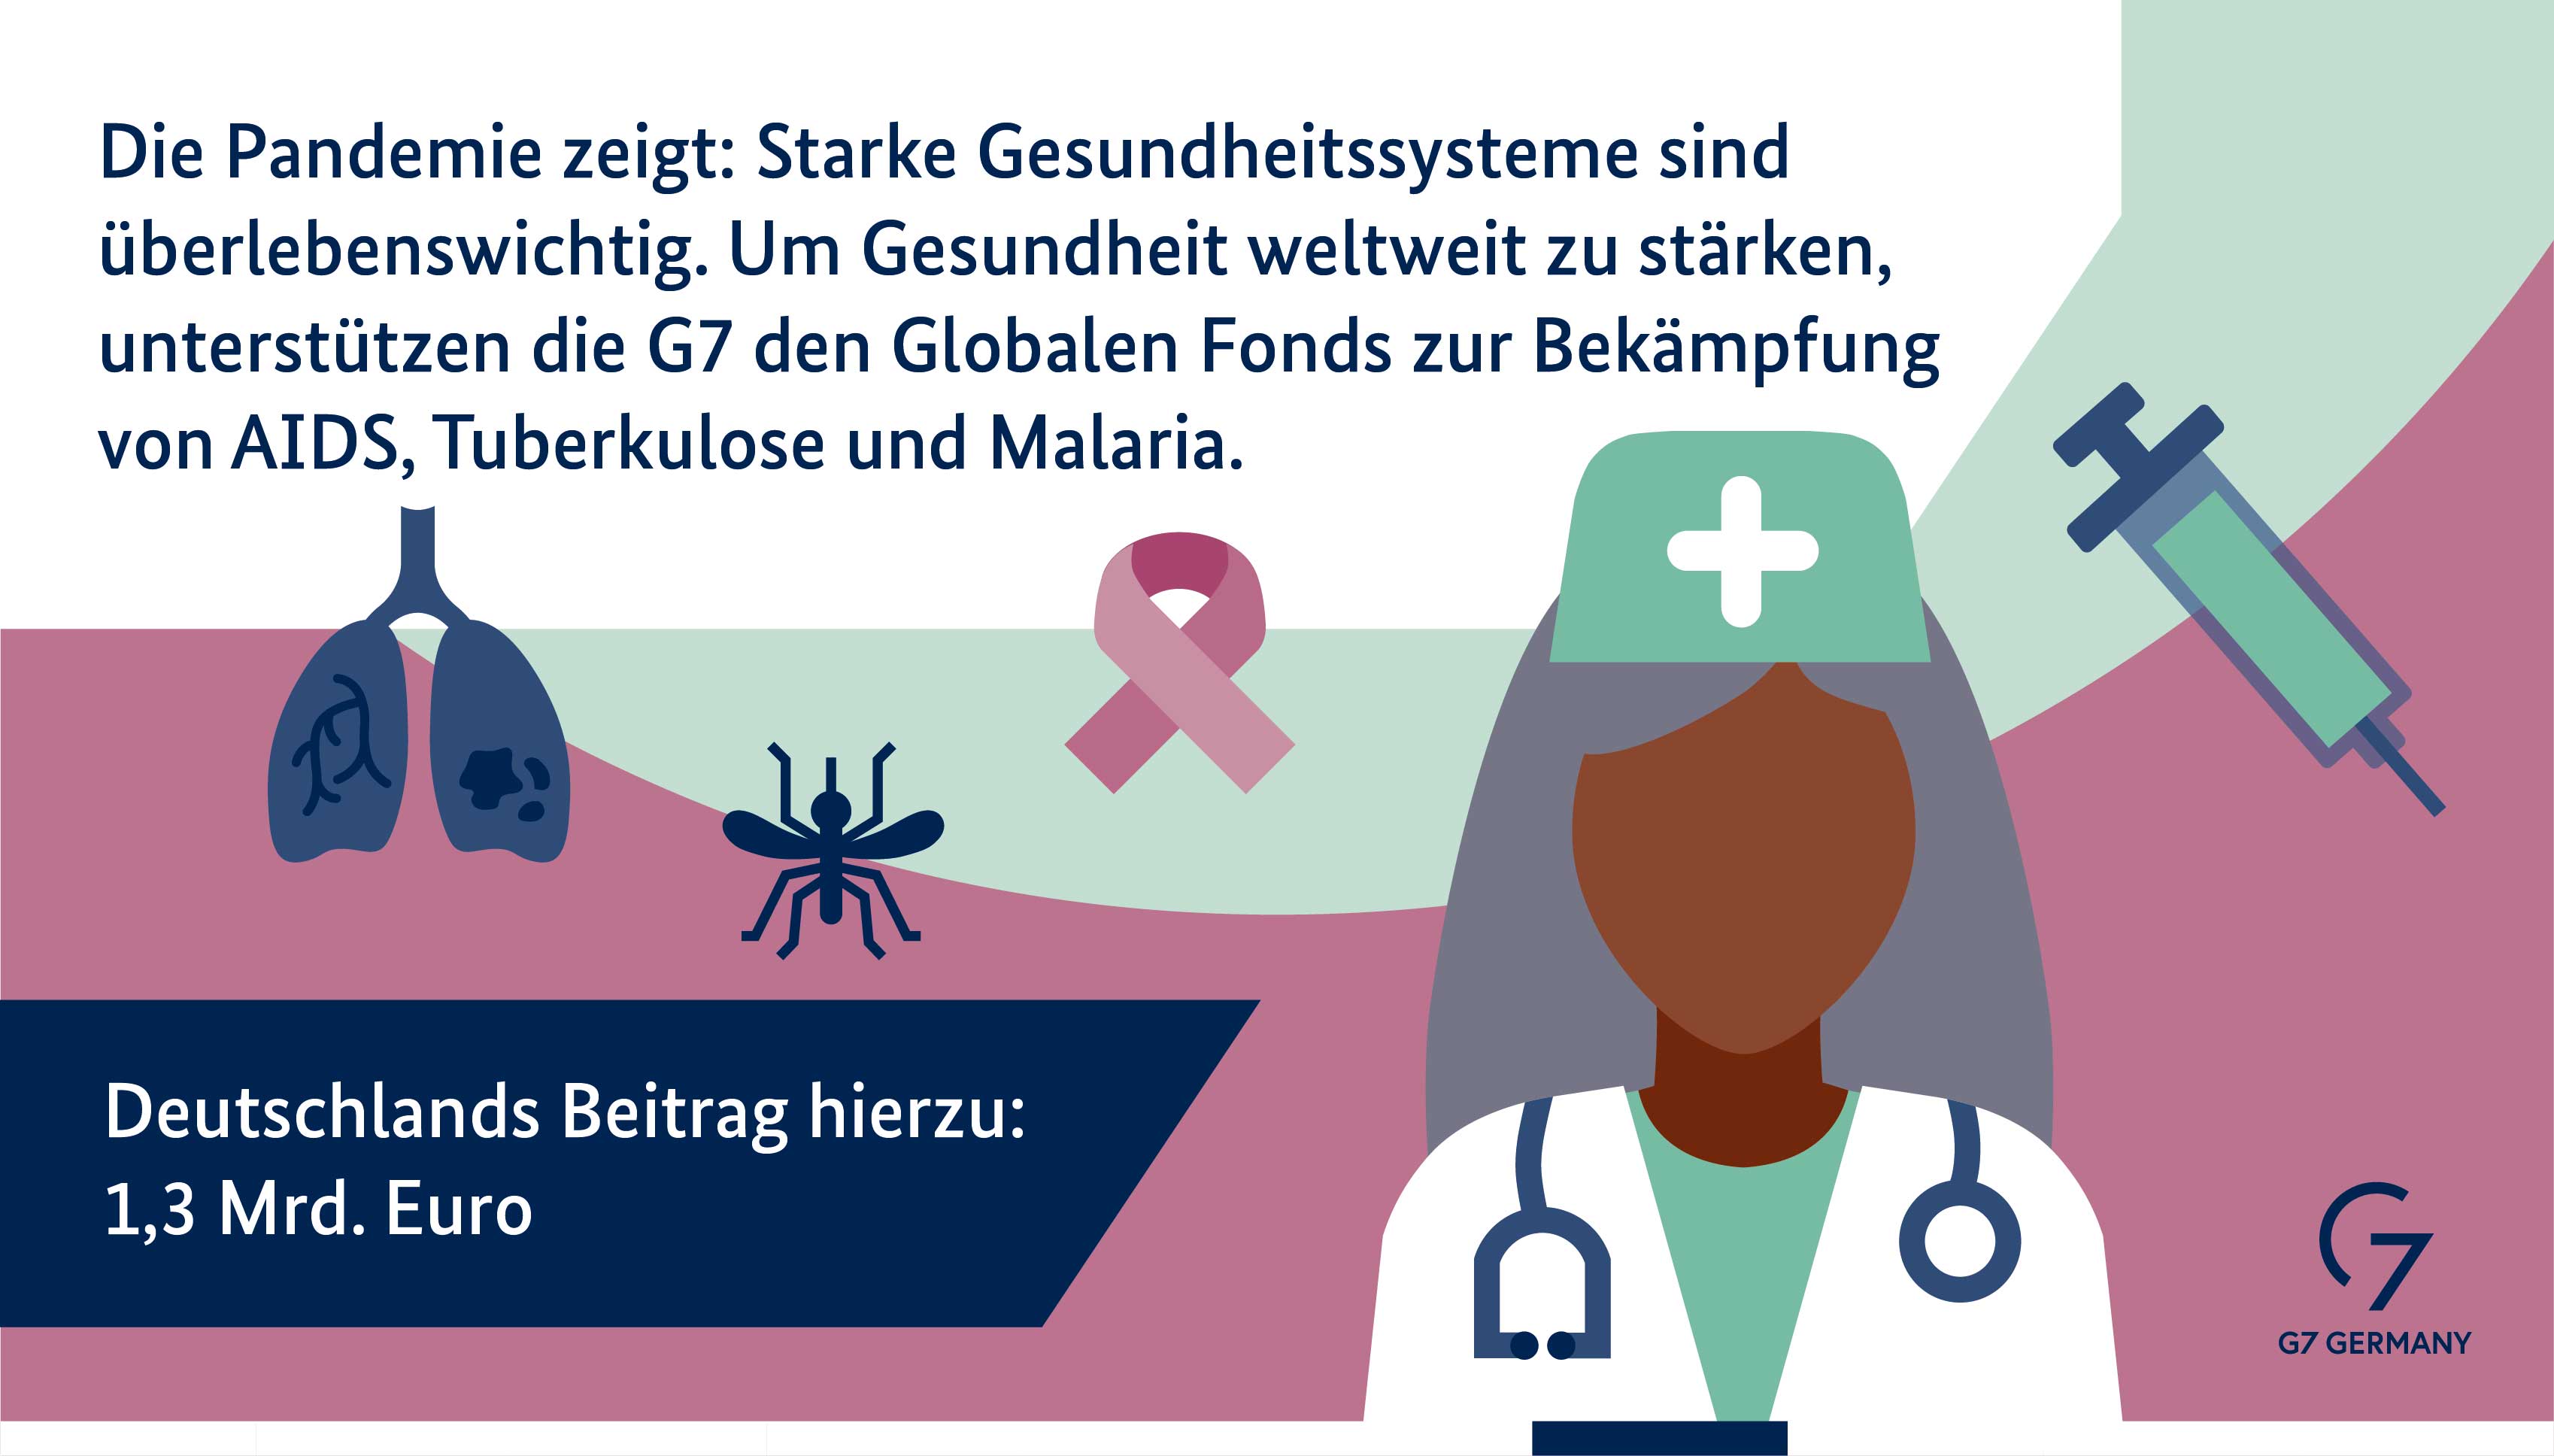 Die Pandemie zeigt: Starke Gesundheitssysteme sind überlebenswichtig. Um Gesundheit weltweit zu stärken, unterstützt die G7 den Globalen Fonds zur Bekämpfung von AIDS, Tuberkulose und Malaria. Deutschlands Beitrag hierzu: 1,2 Milliarden Euro